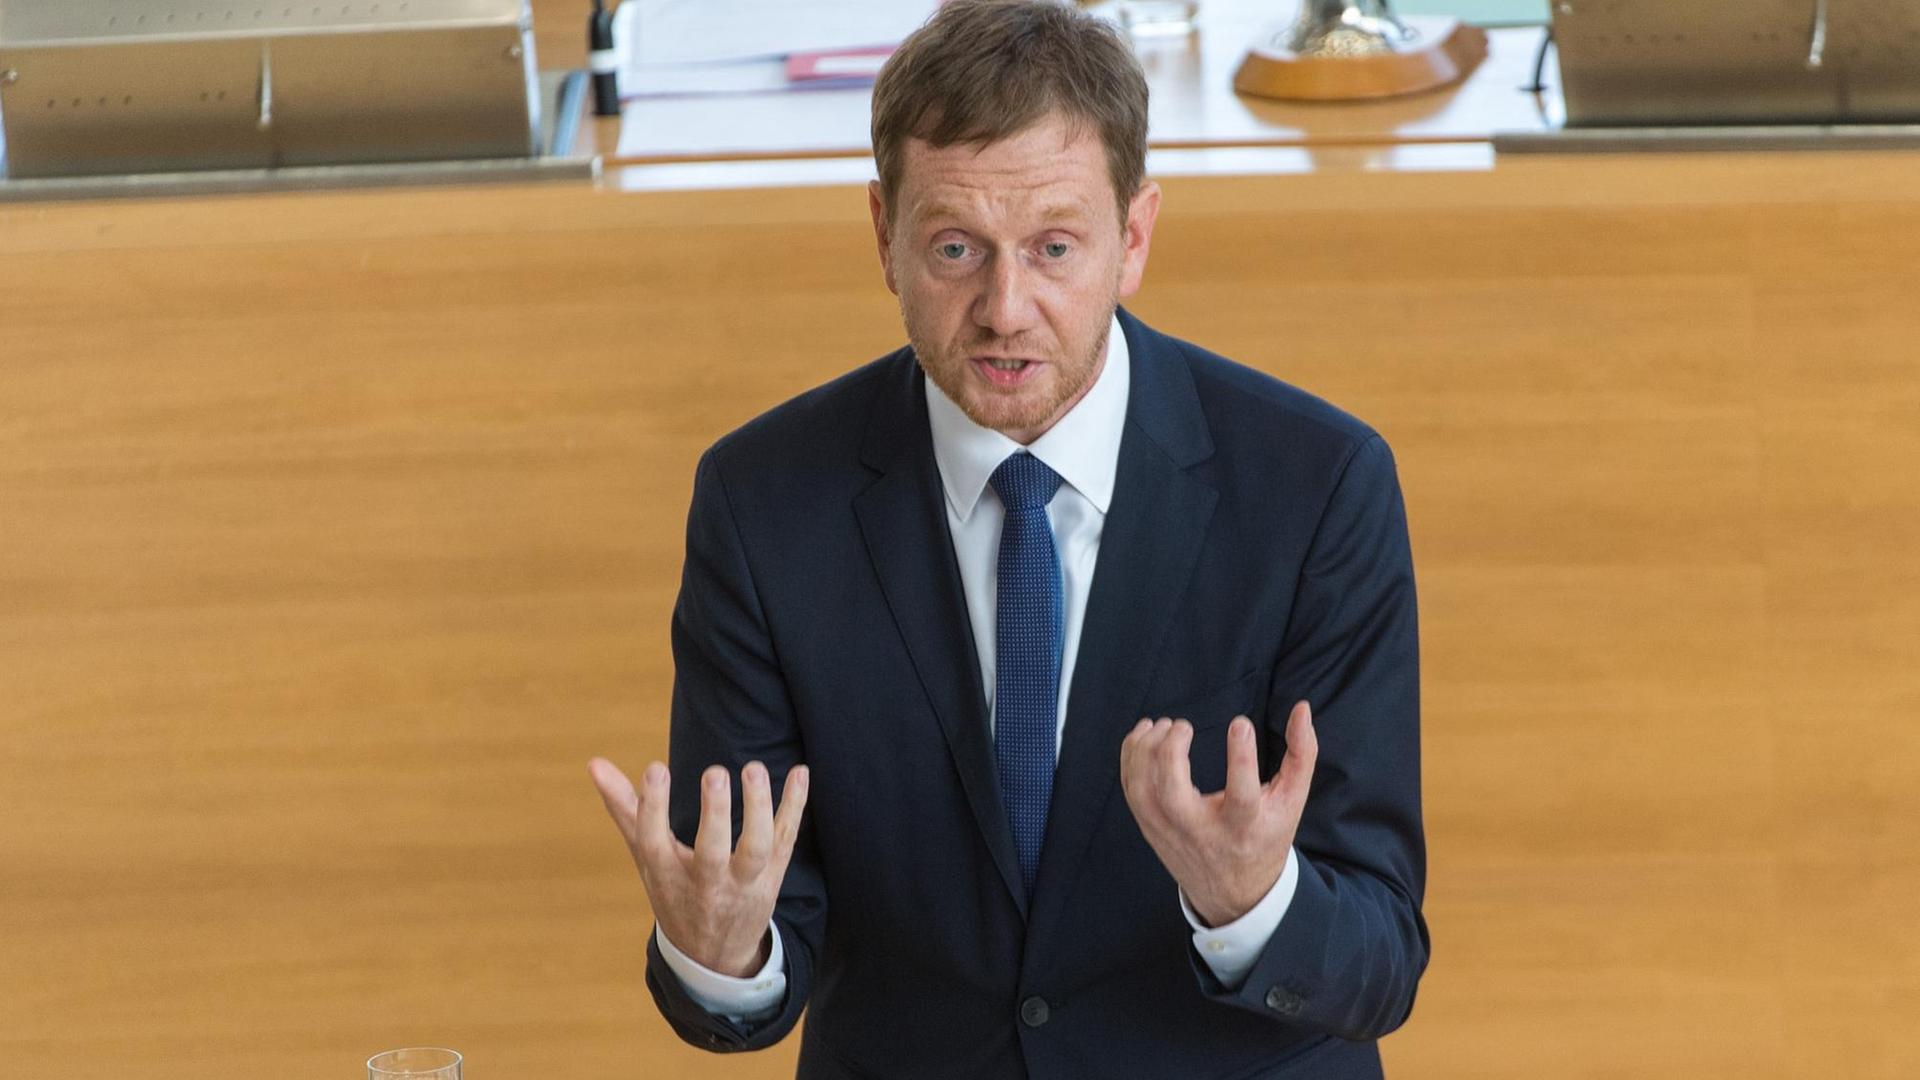 Michael Kretschmer von der CDU, gestikulierend am Rednerpult im Sächsischen Landtag